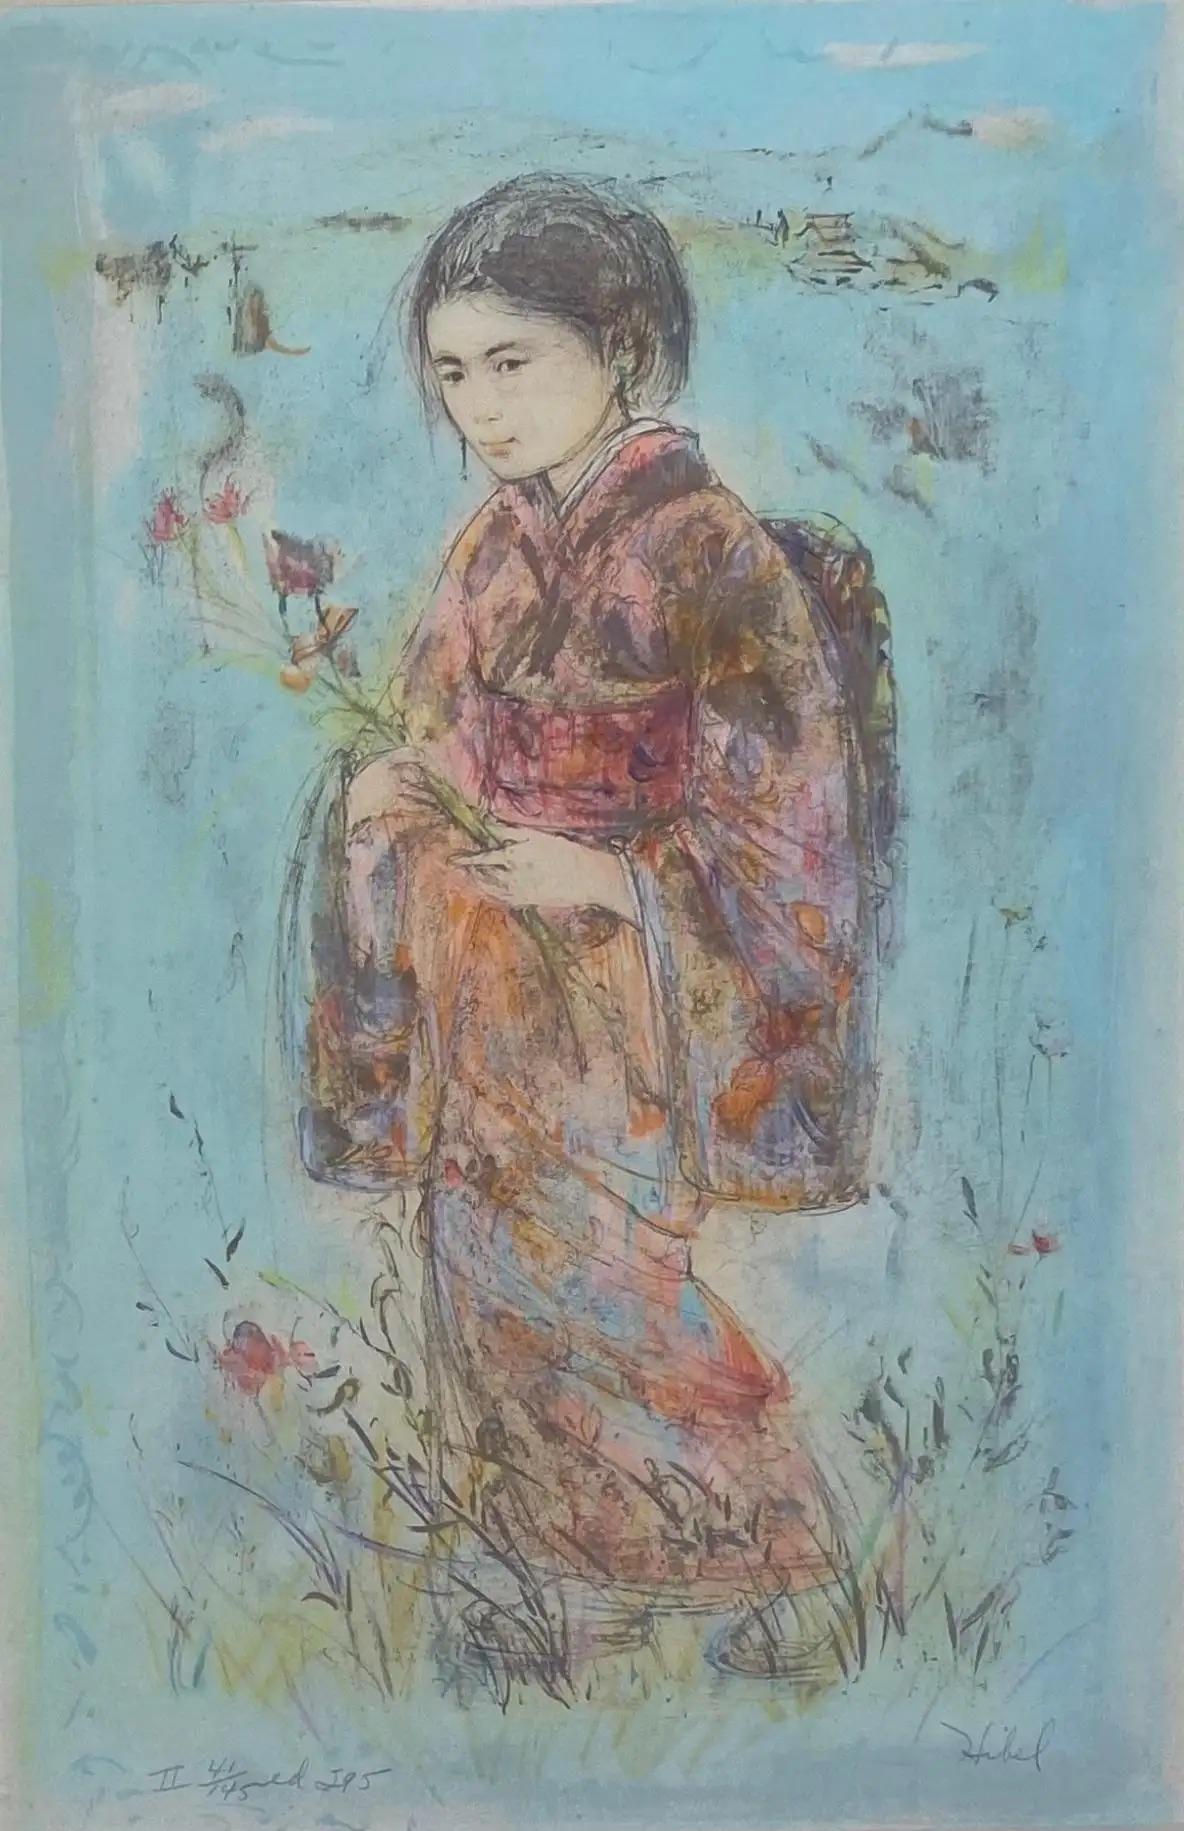 Une superbe œuvre d'art décoratif d'Edna Hibel représentant une jeune fille vêtue d'un kimono japonais traditionnel.
 
Edna Hibel : 1917-2015. Artistique américain important et bien répertorié. Principalement associé à la Floride et au